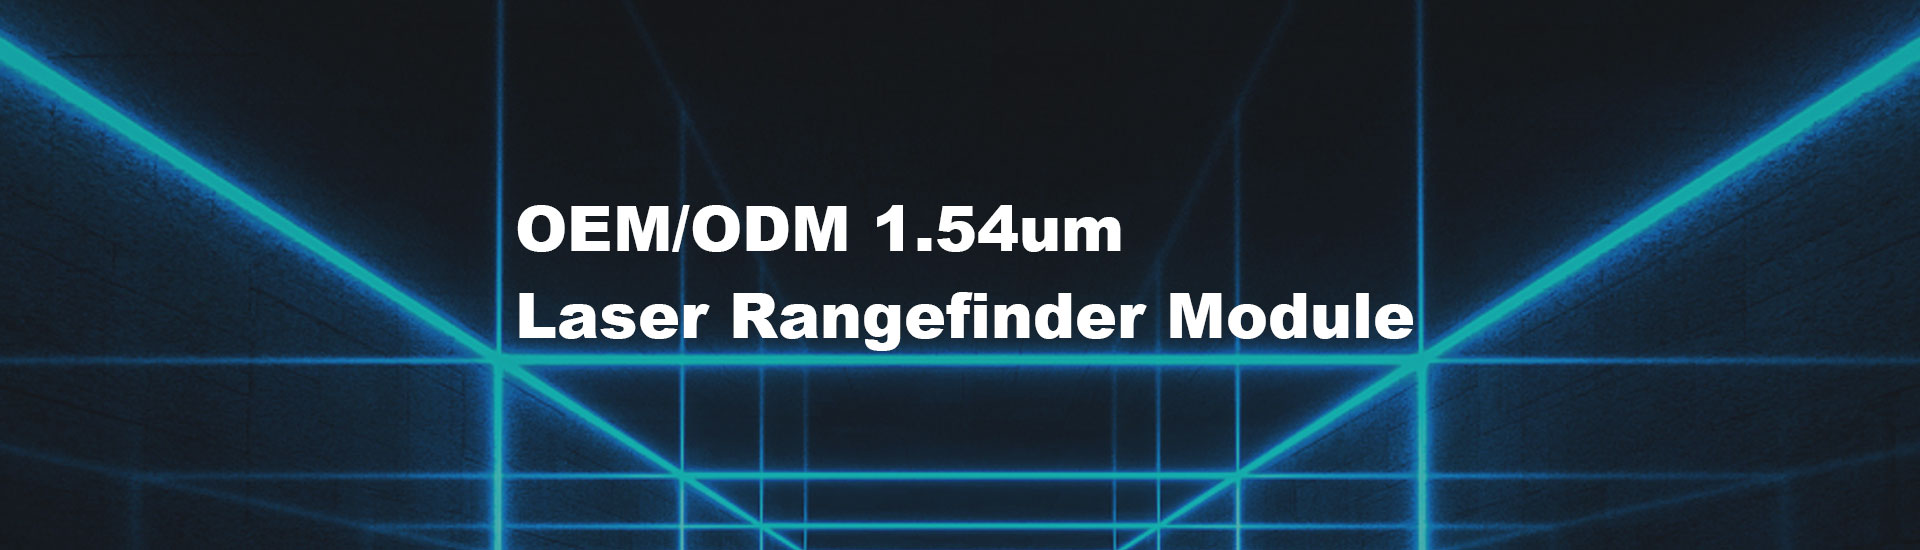 6km  Laser Rangefinder Module